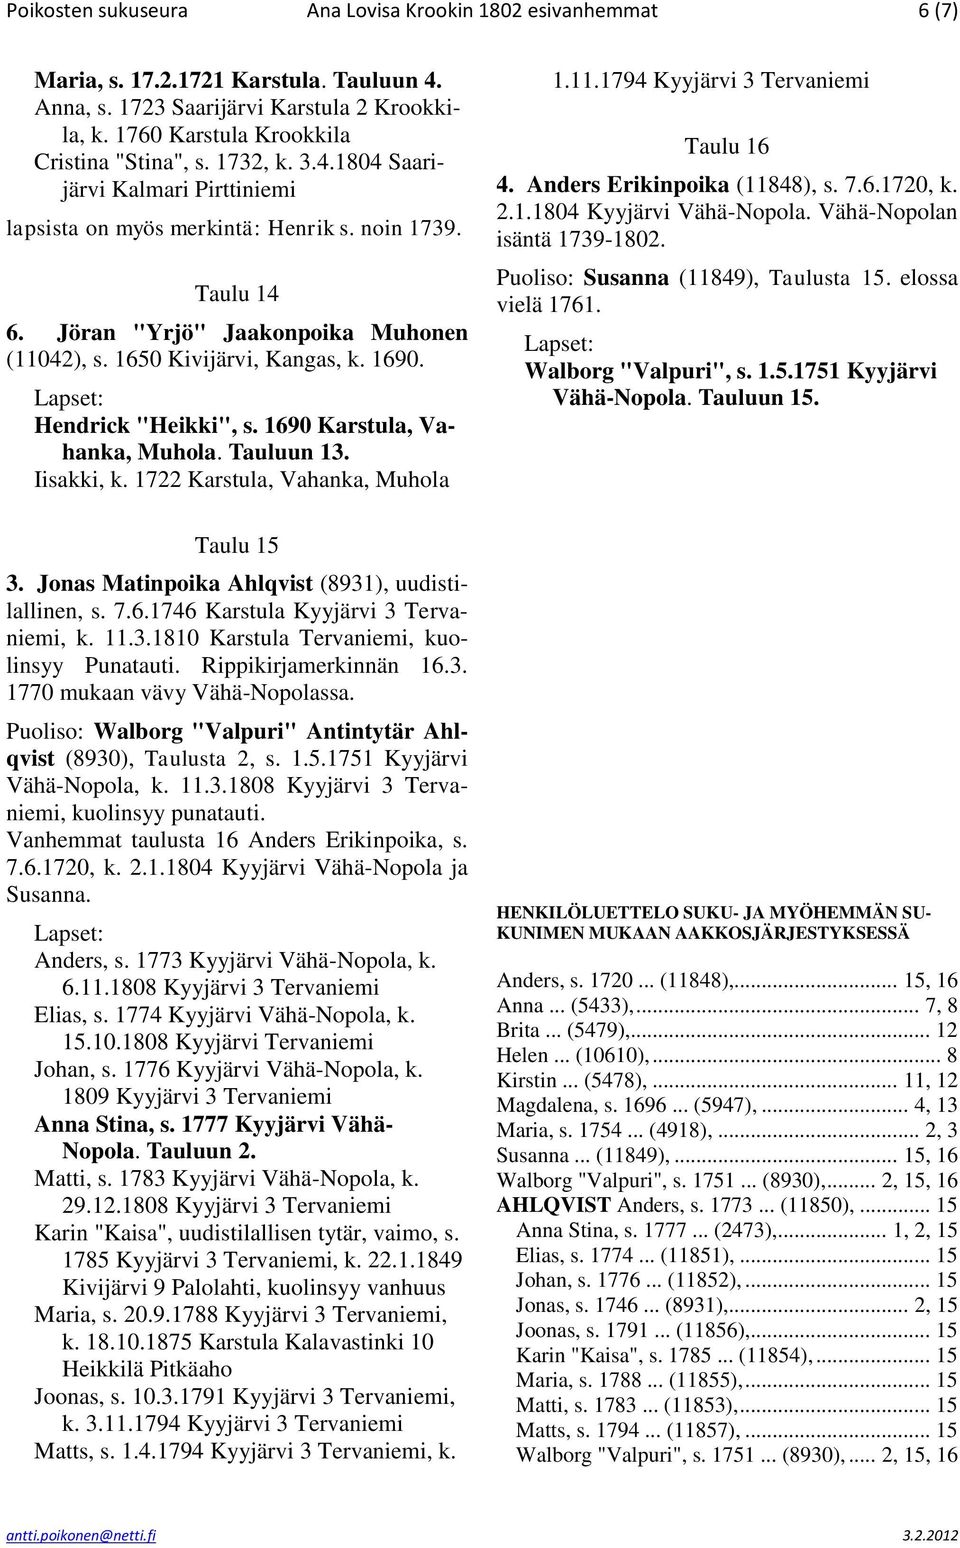 Hendrick "Heikki", s. 1690 Karstula, Vahanka, Muhola. Tauluun 13. Iisakki, k. 1722 Karstula, Vahanka, Muhola Taulu 15 3. Jonas Matinpoika Ahlqvist (8931), uudistilallinen, s. 7.6.1746 Karstula Kyyjärvi 3 Tervaniemi, k.